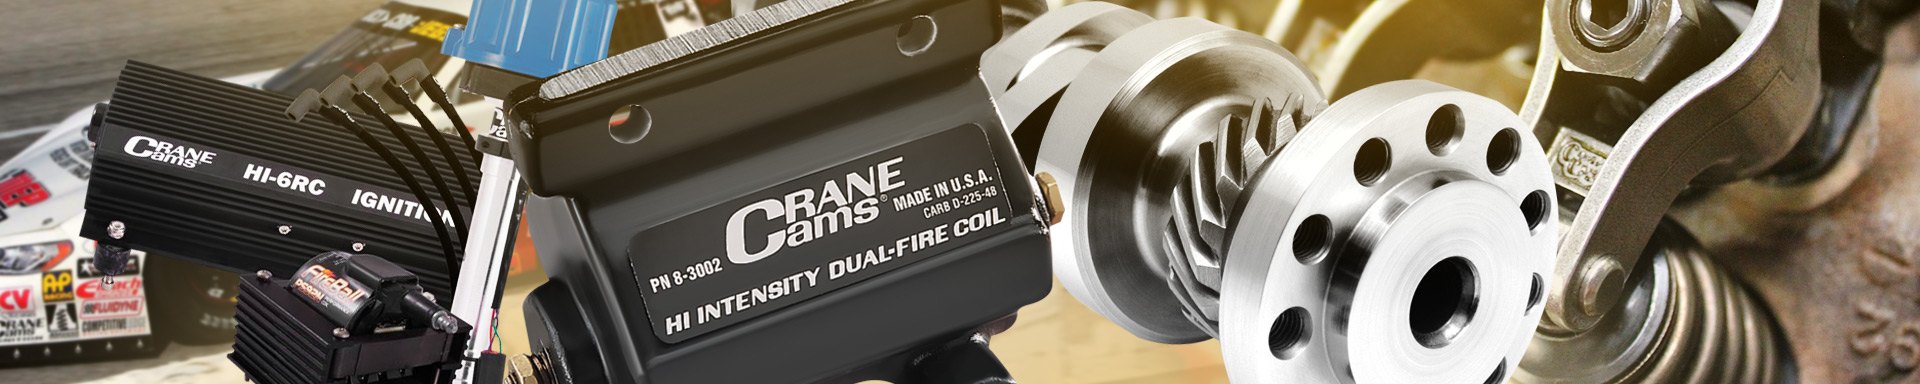 Crane Cams Engine